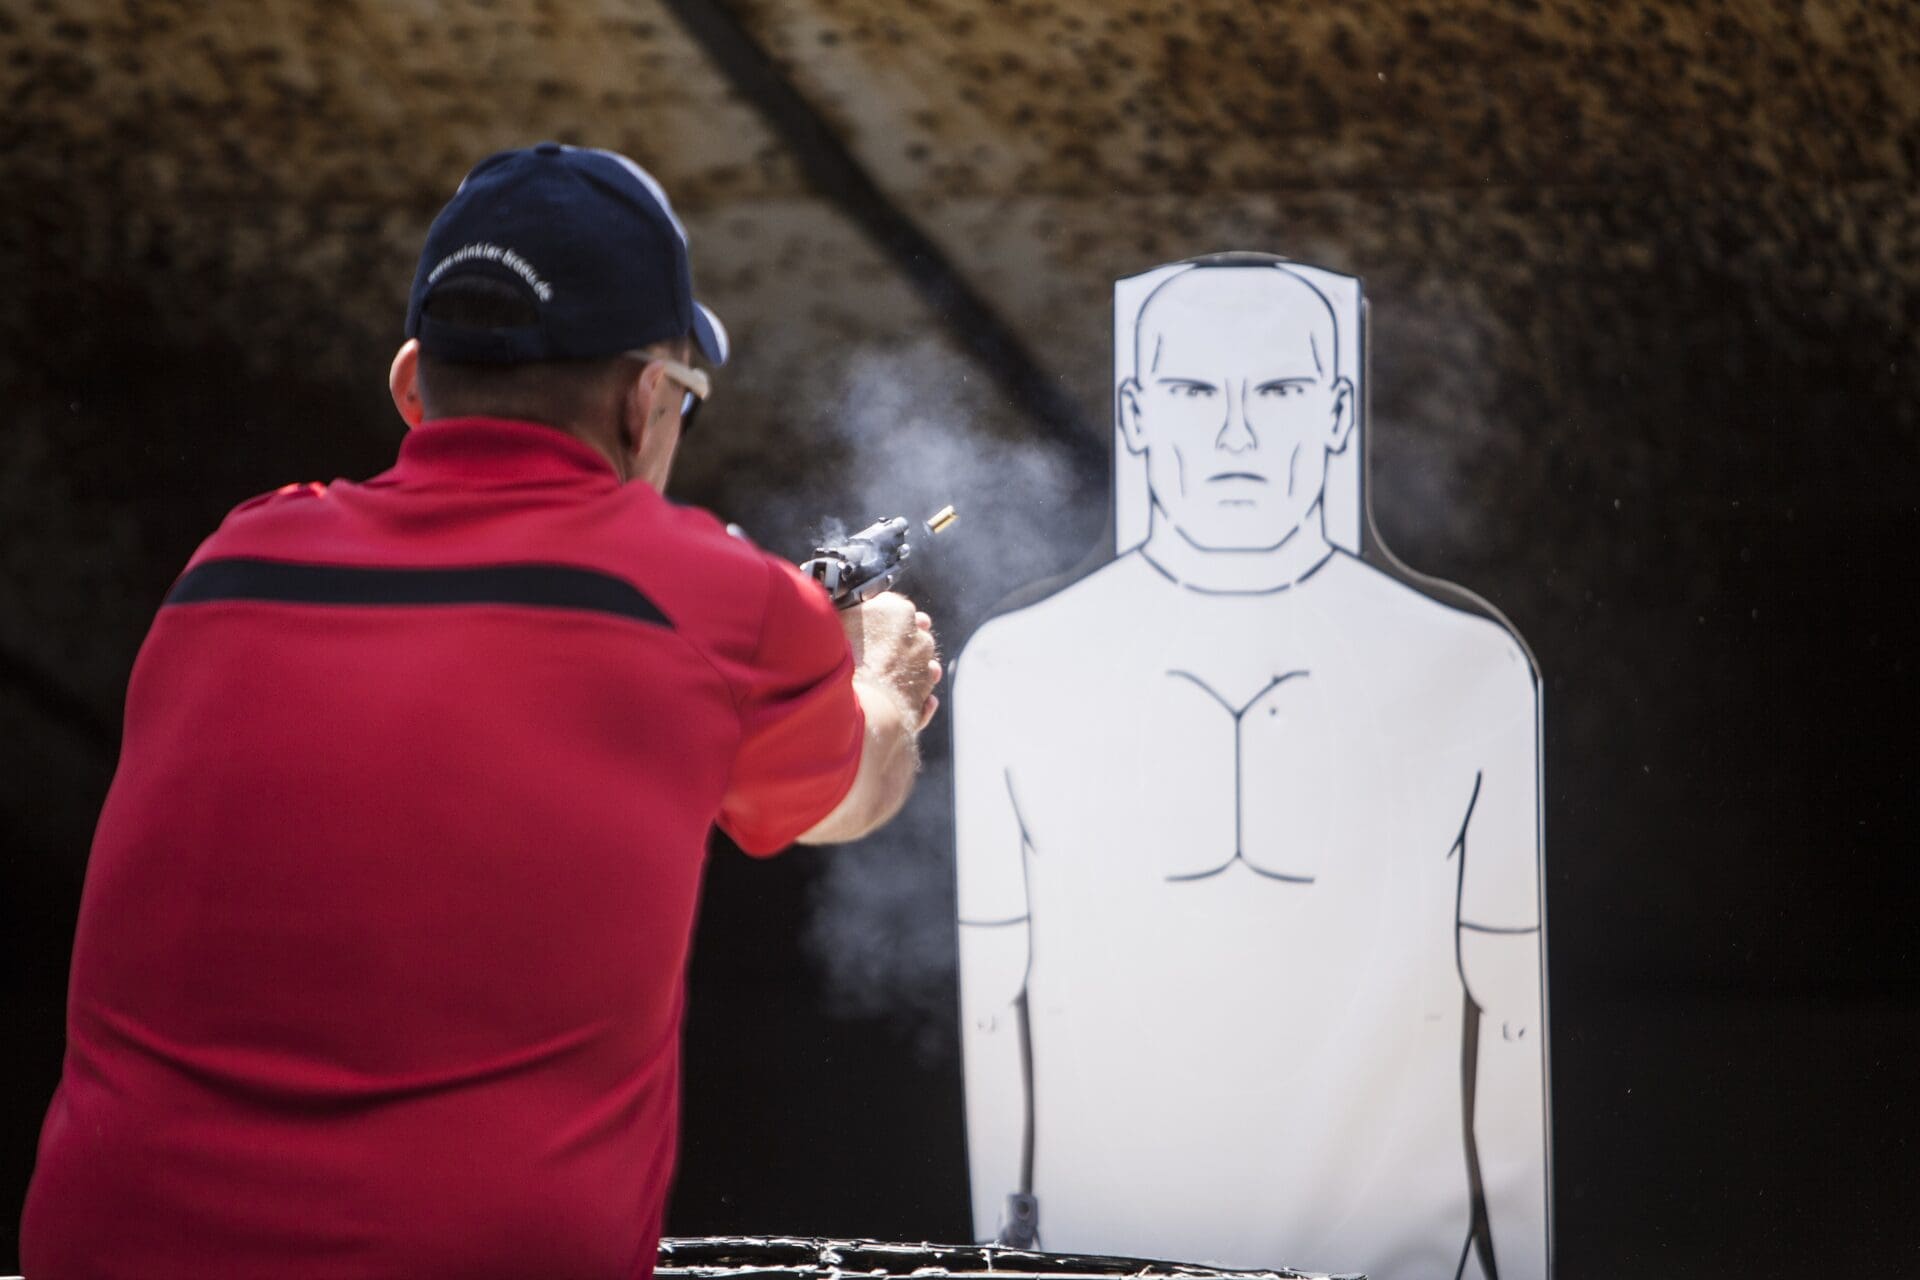 firearms pistol training range personal defense